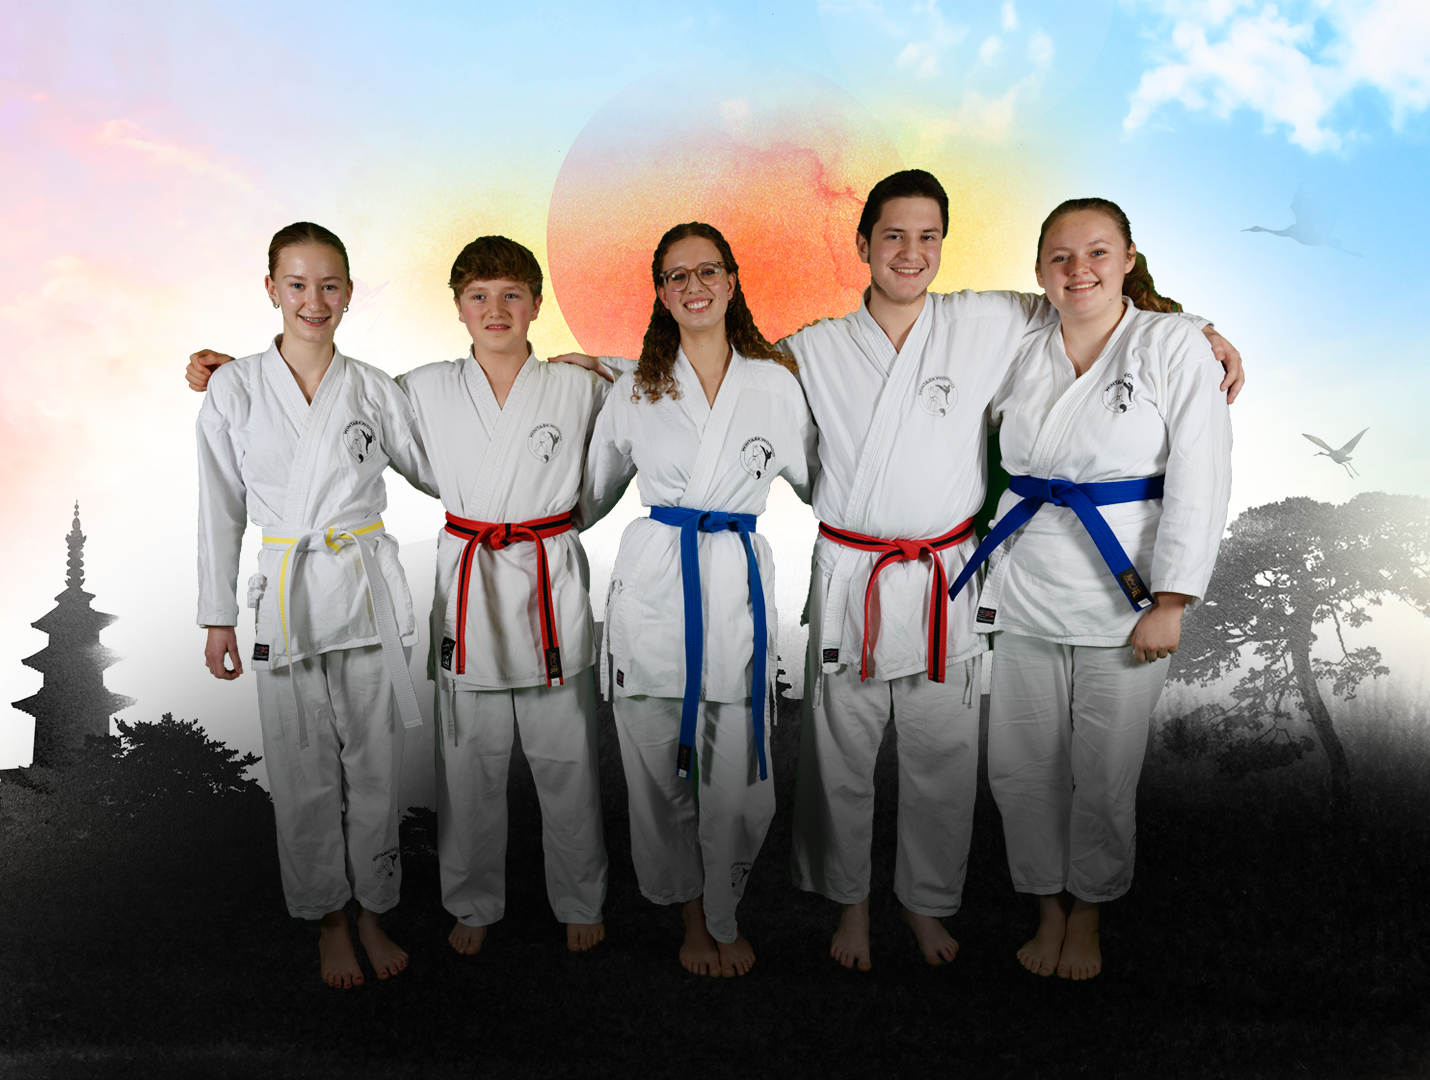 Mit WinTaekwondo erfolgreich sein und mehr Selbstbewusstsein aufbauen.